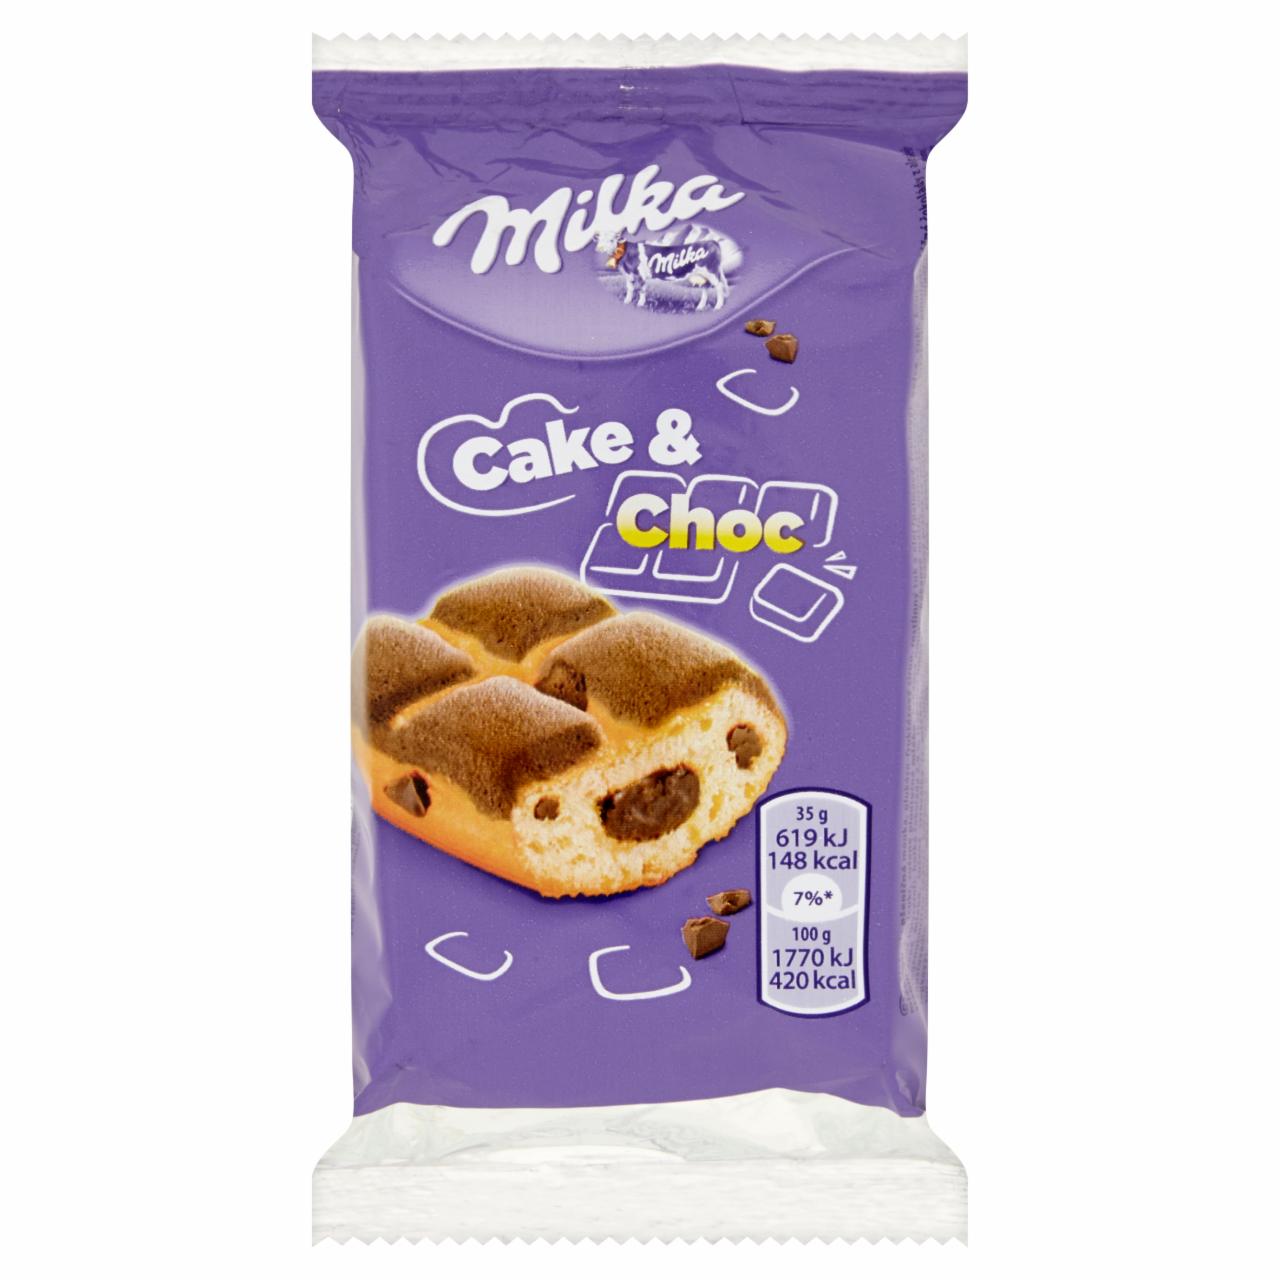 Képek - Milka Cake & Choc piskóta alpesi tejcsokoládé darabkákkal és csokoládés töltelékkel 35 g